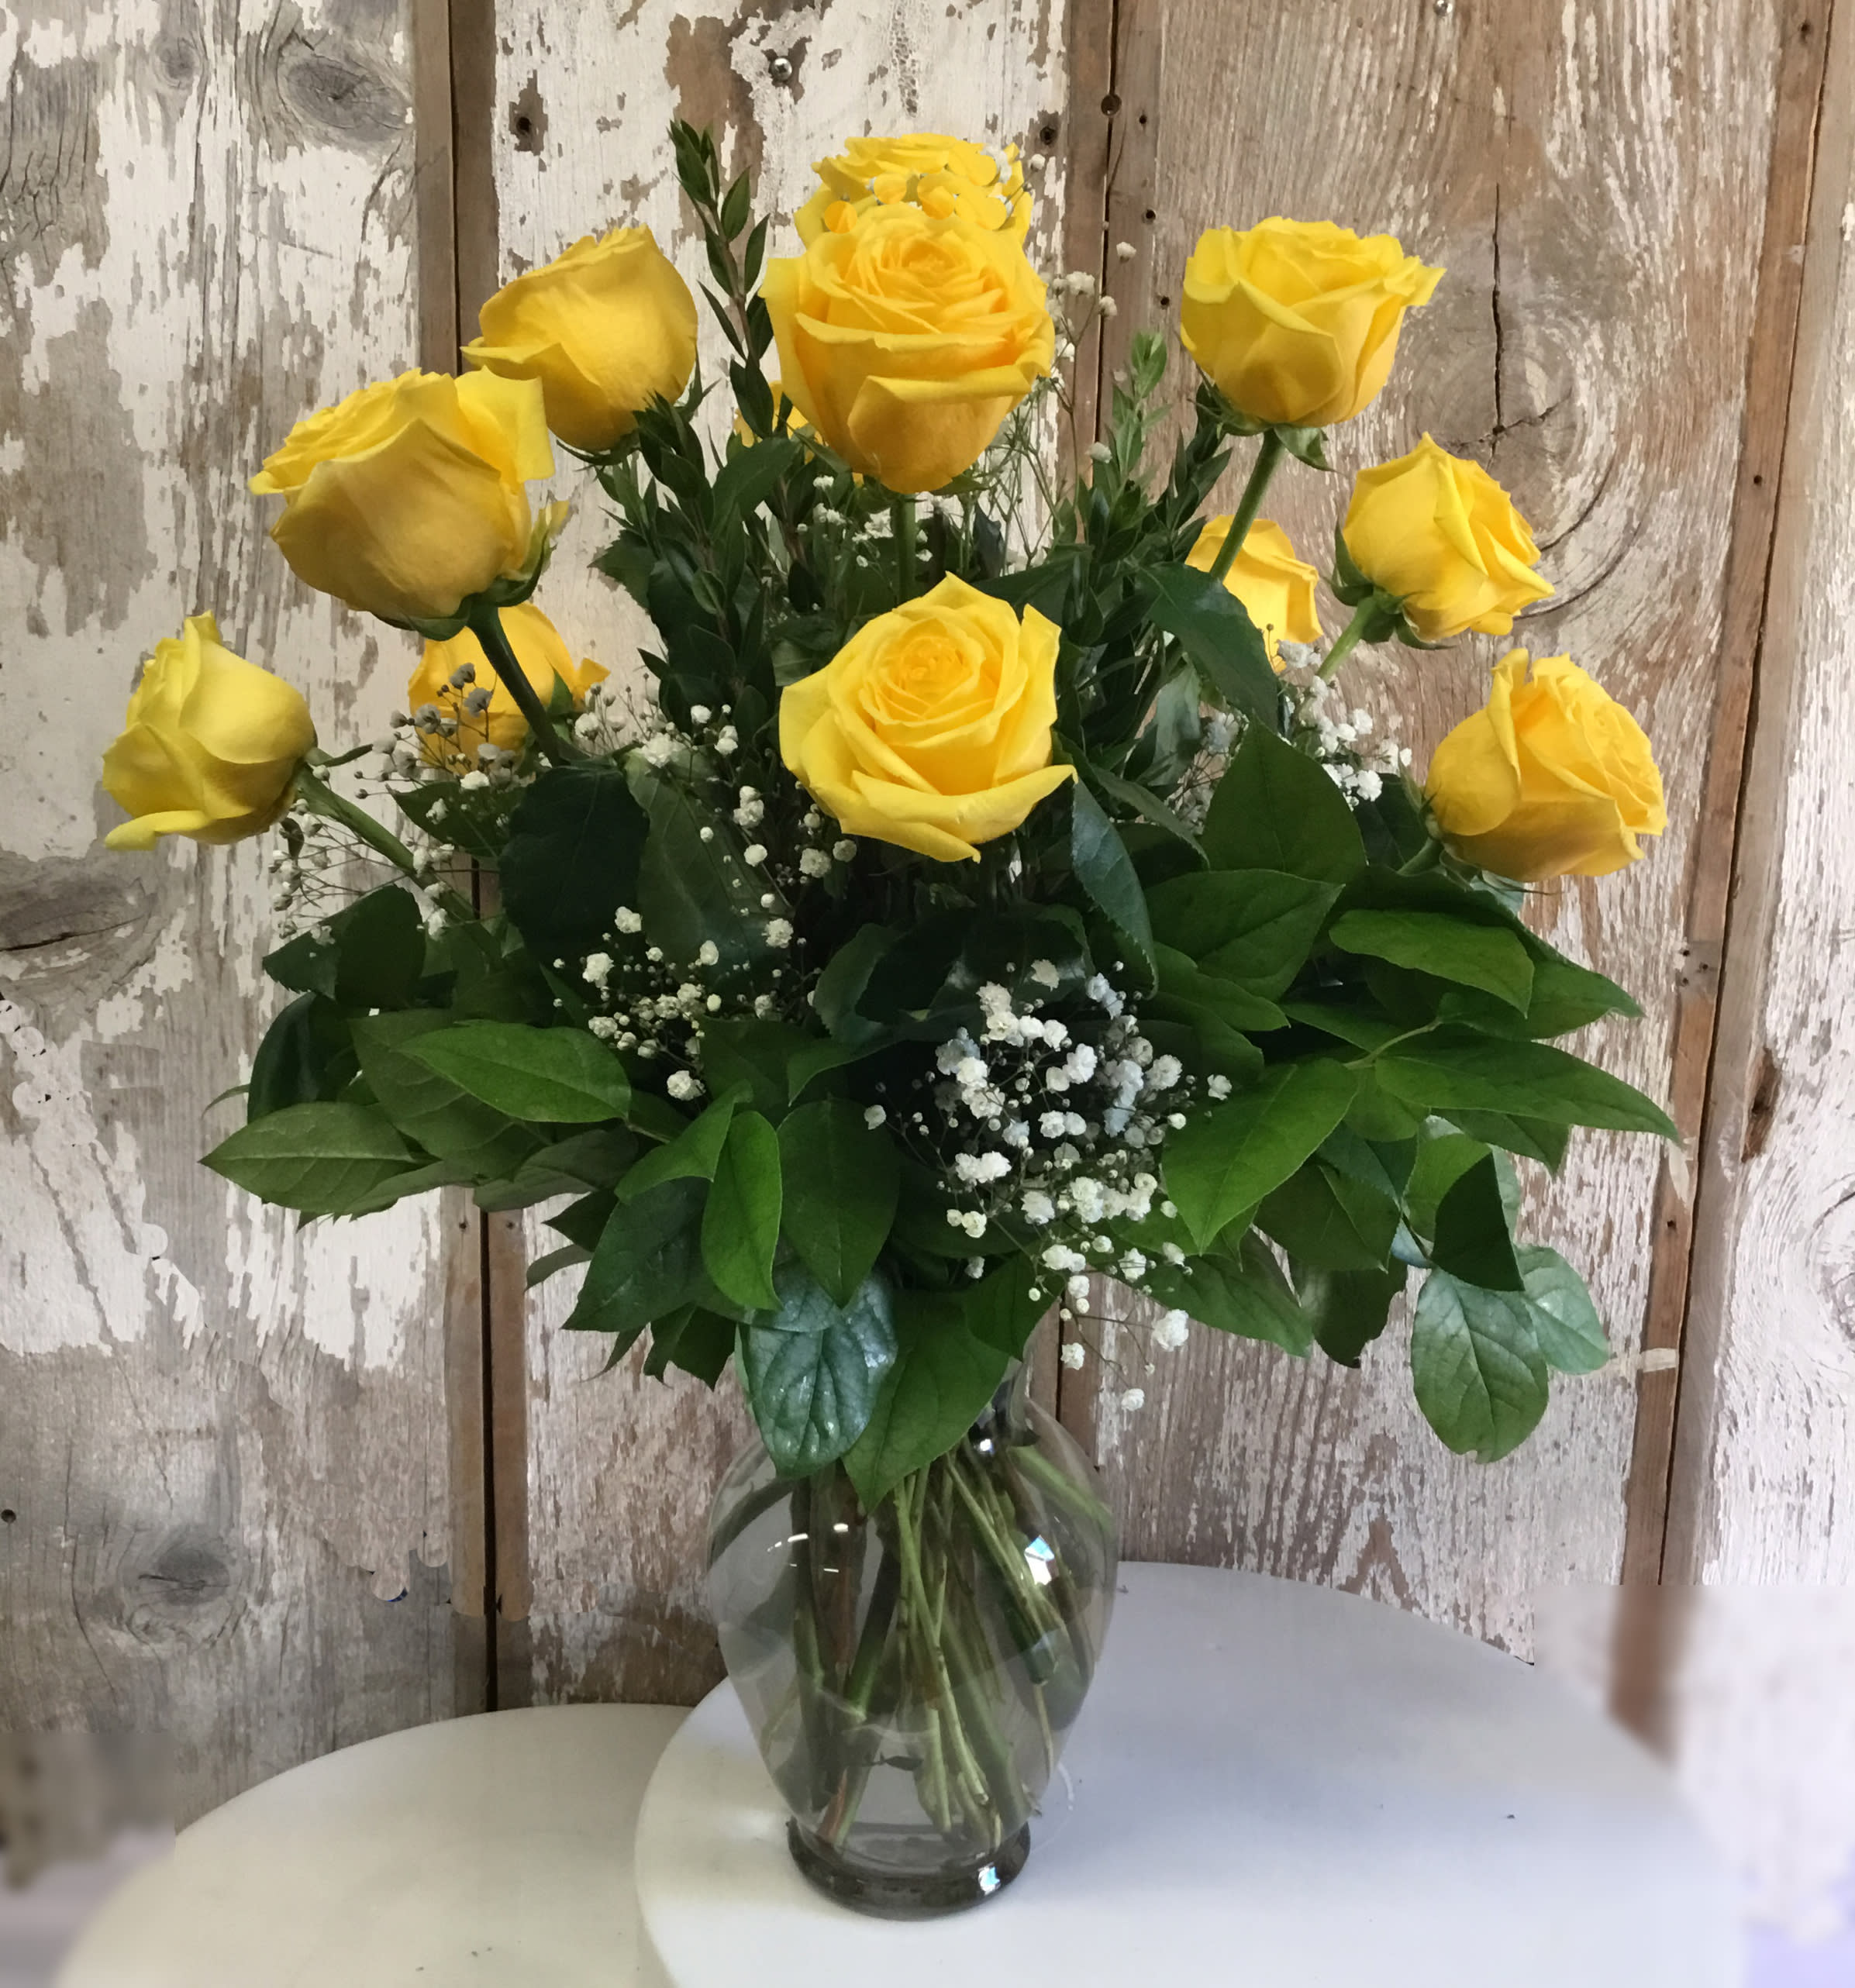 1 Dozen Yellow Roses - 1 Dozen Yellow Roses with Mixed Greens